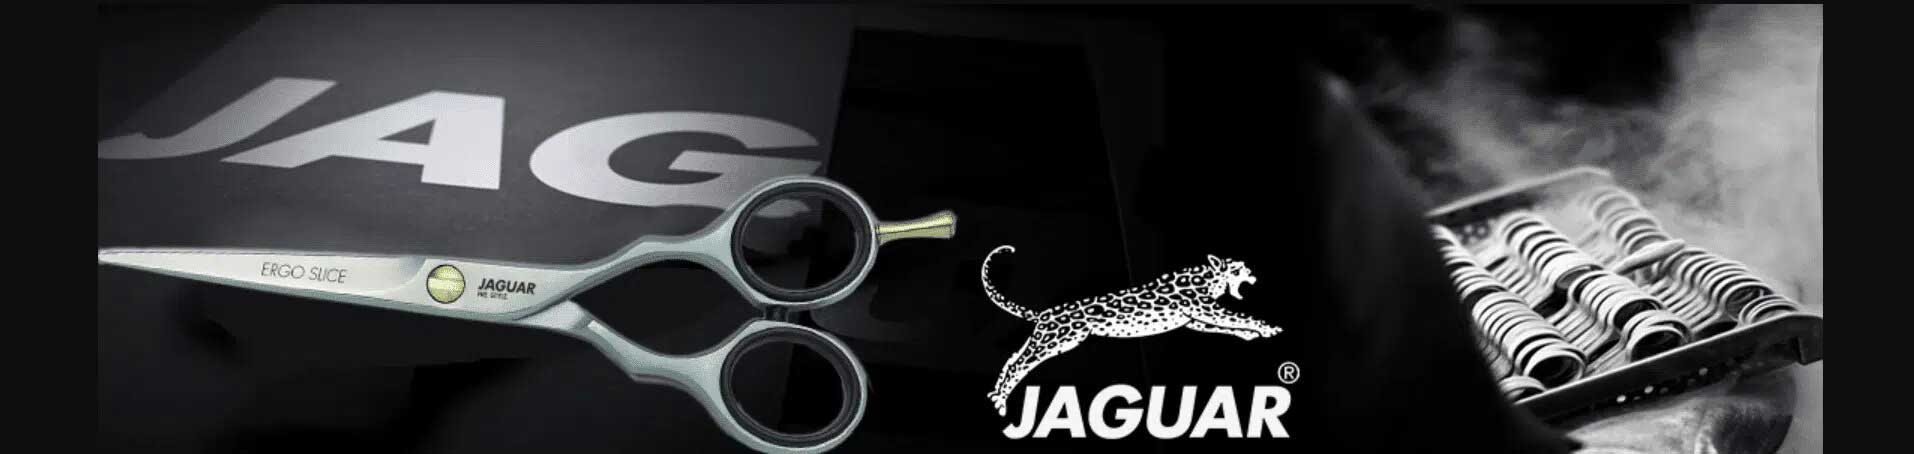 Jaguar-scharen-banner-homepagina-AA-Cosmetica-2